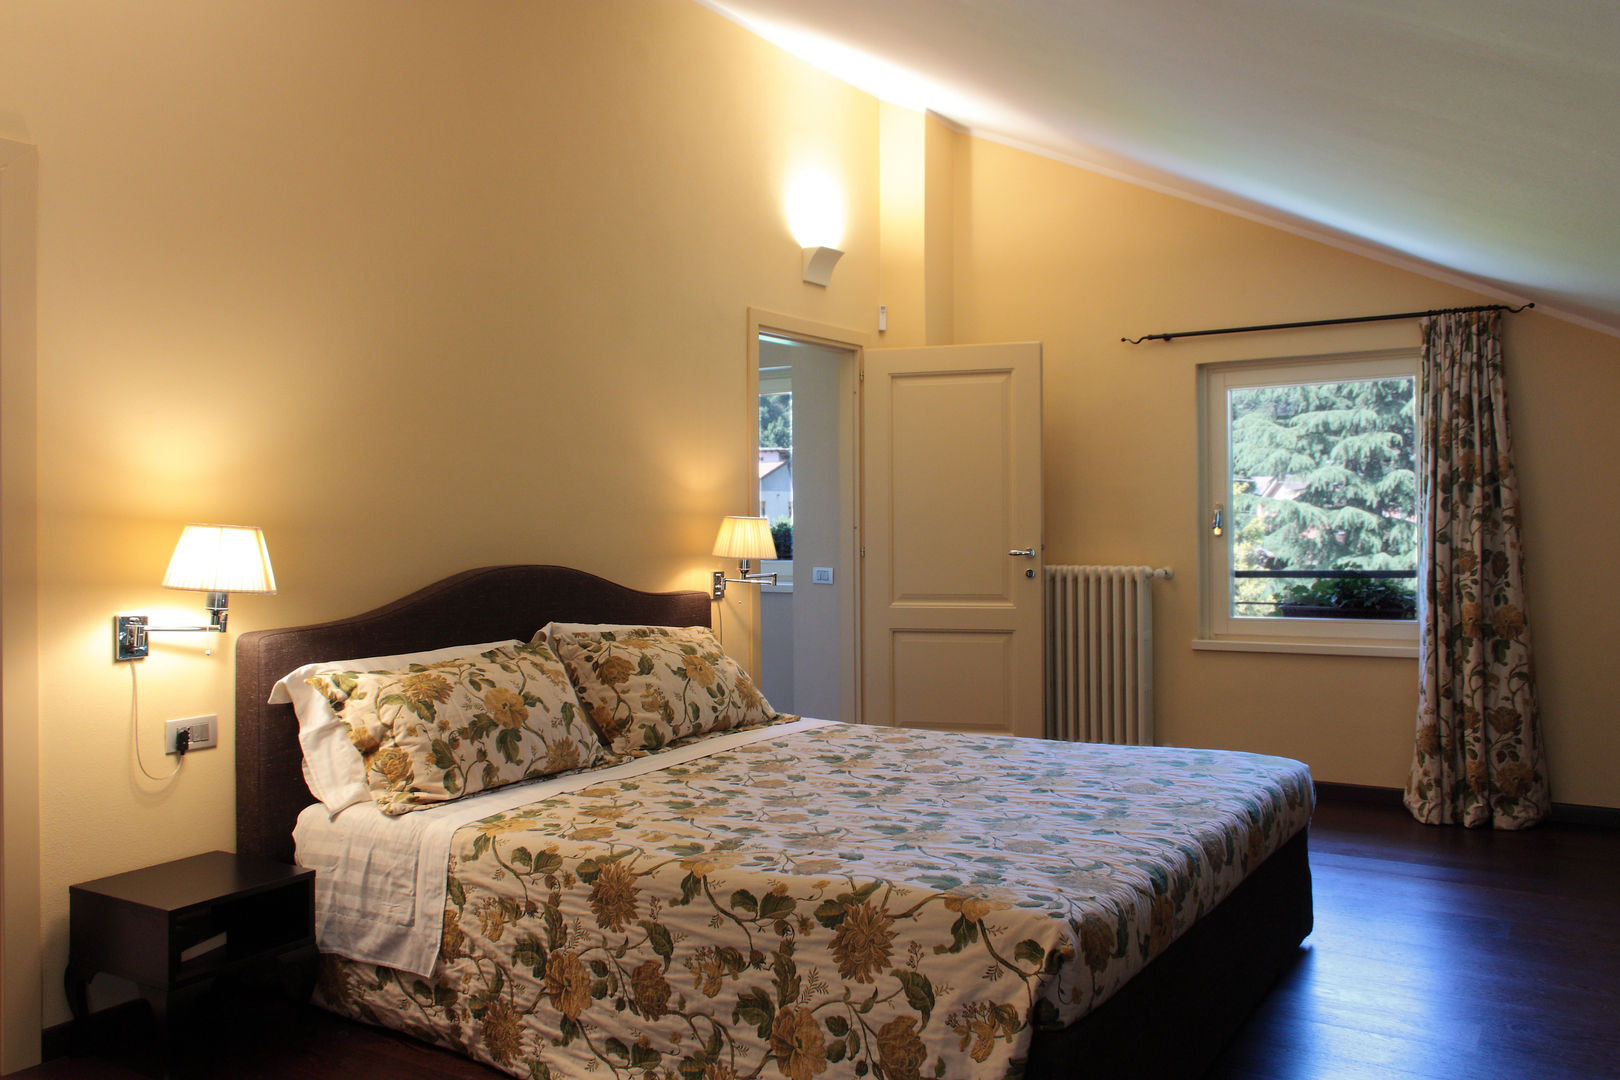 camera da letto Gaia Brunello | in-photo Camera da letto in stile classico